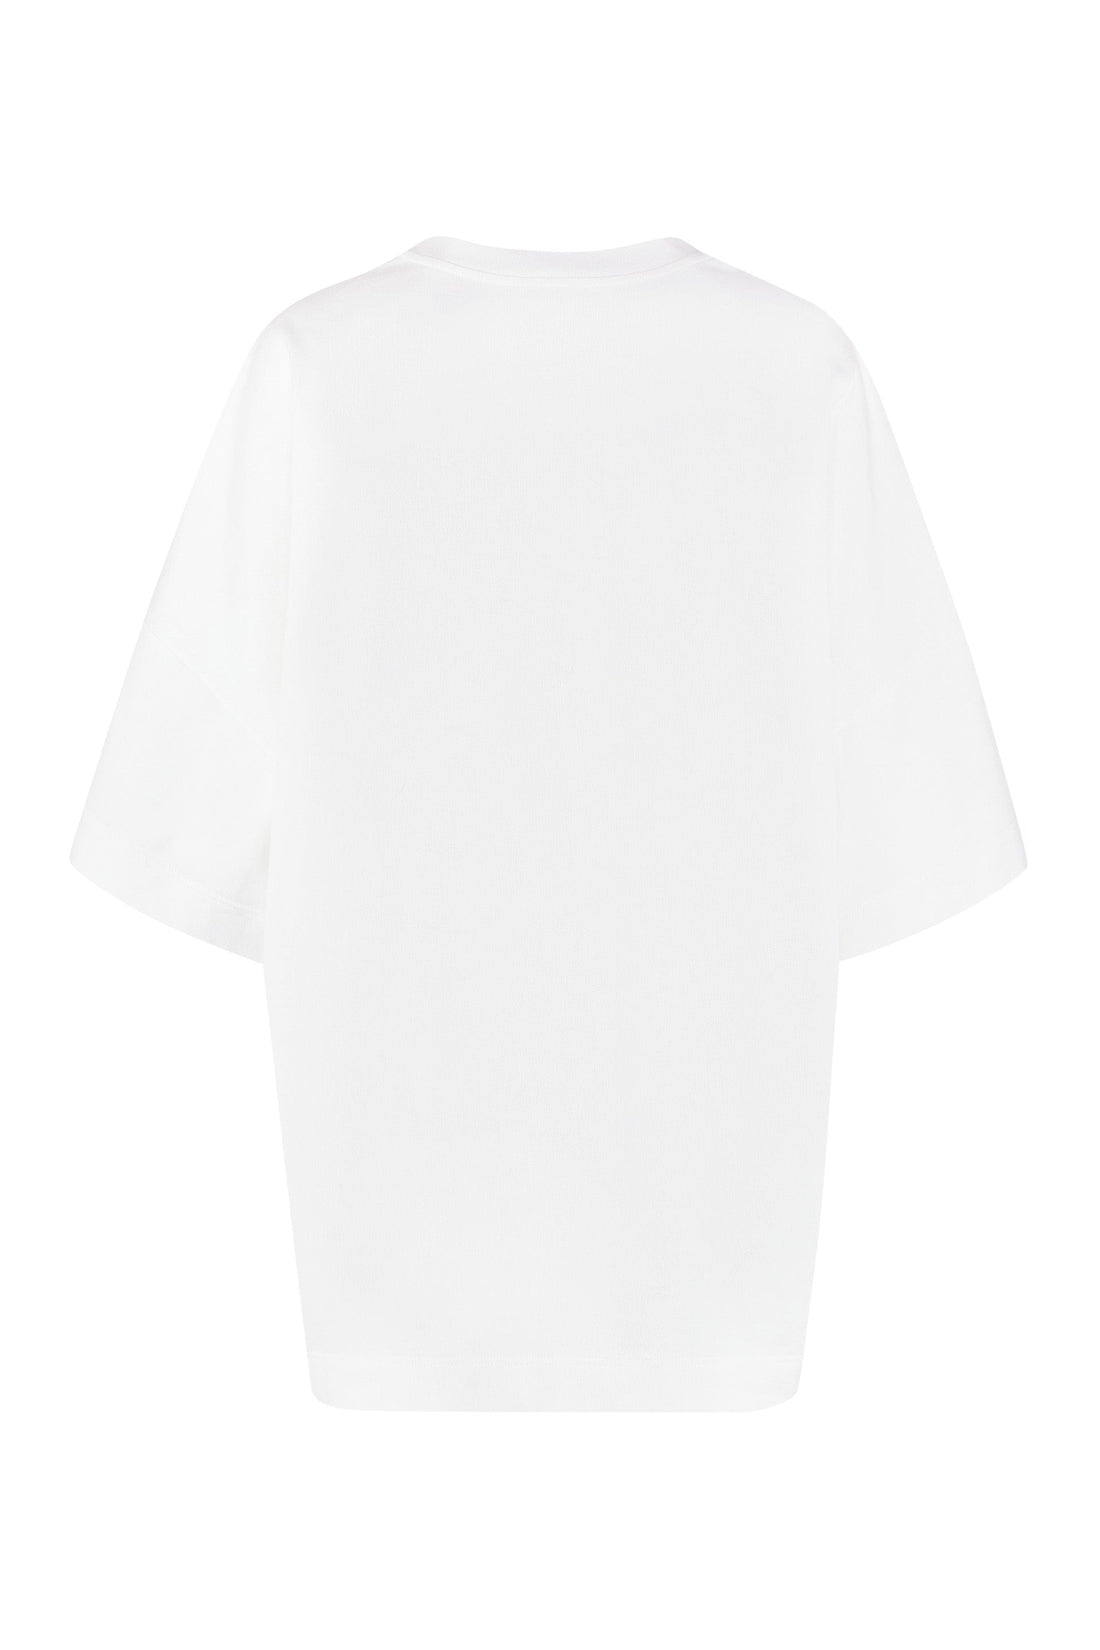 Alexander McQueen-OUTLET-SALE-Cotton crew-neck T-shirt-ARCHIVIST